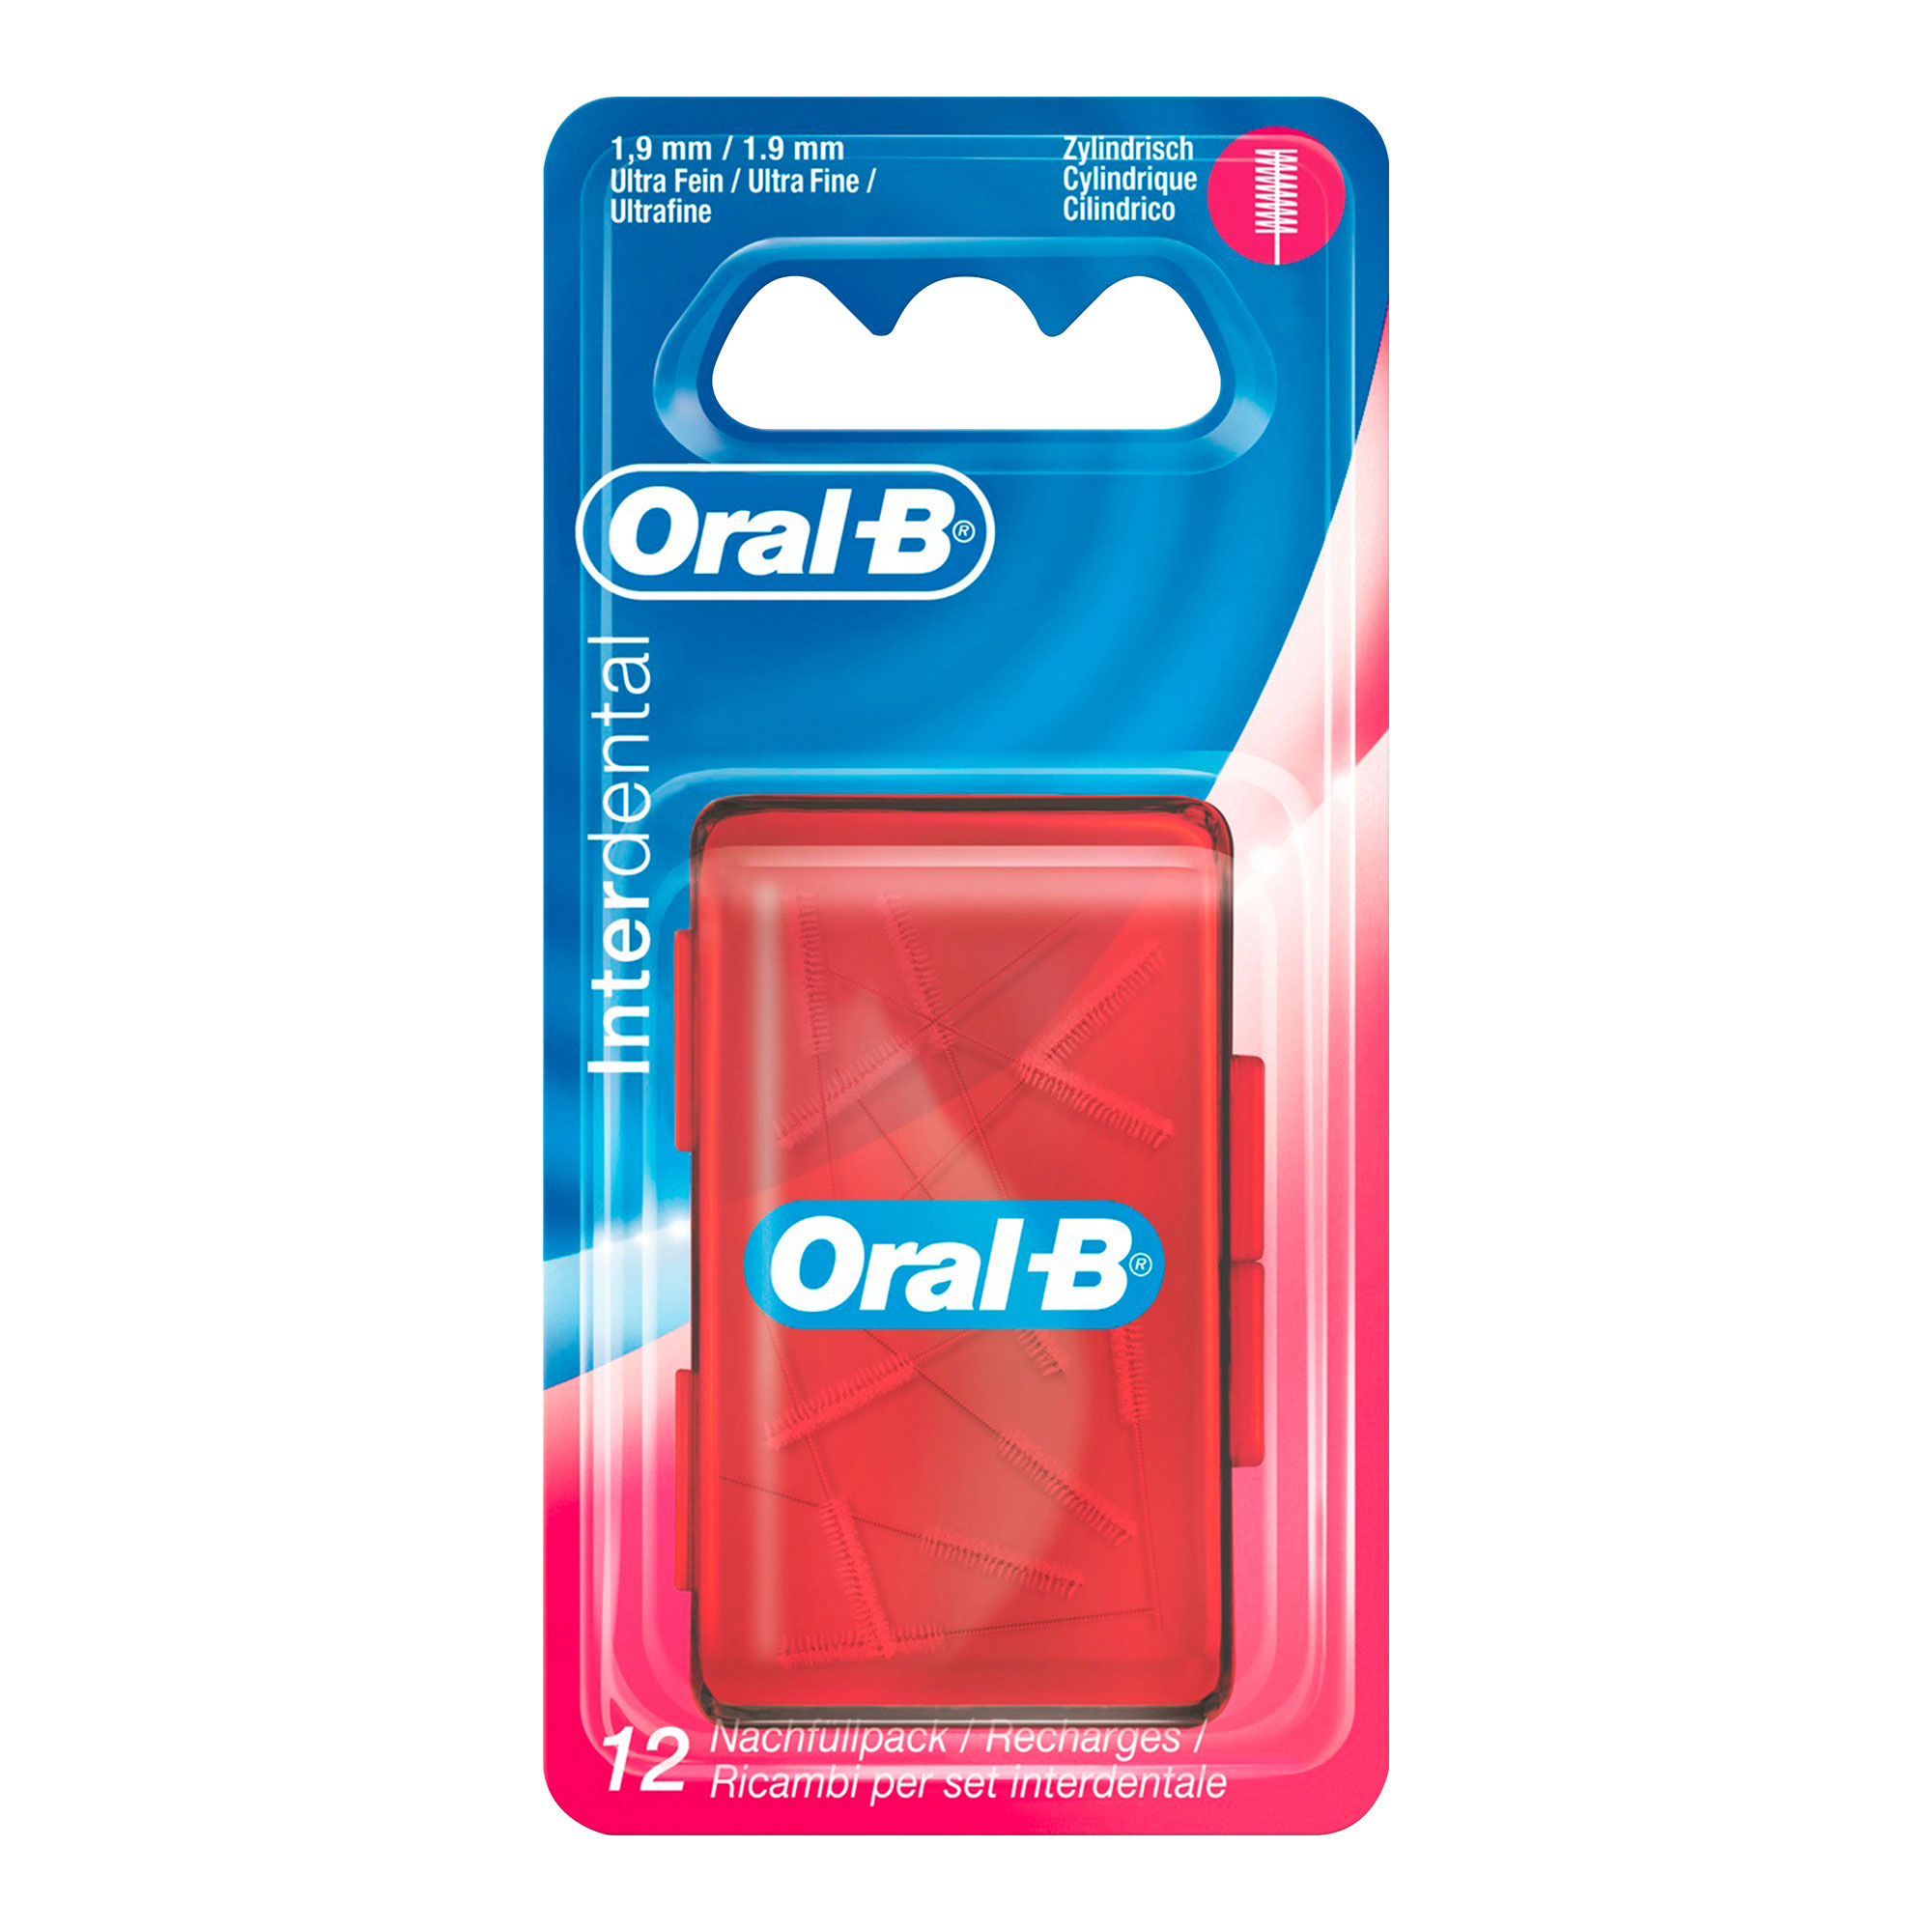 Oral-B ID Nachfüllpack Ultra Fein 1,9 mm.